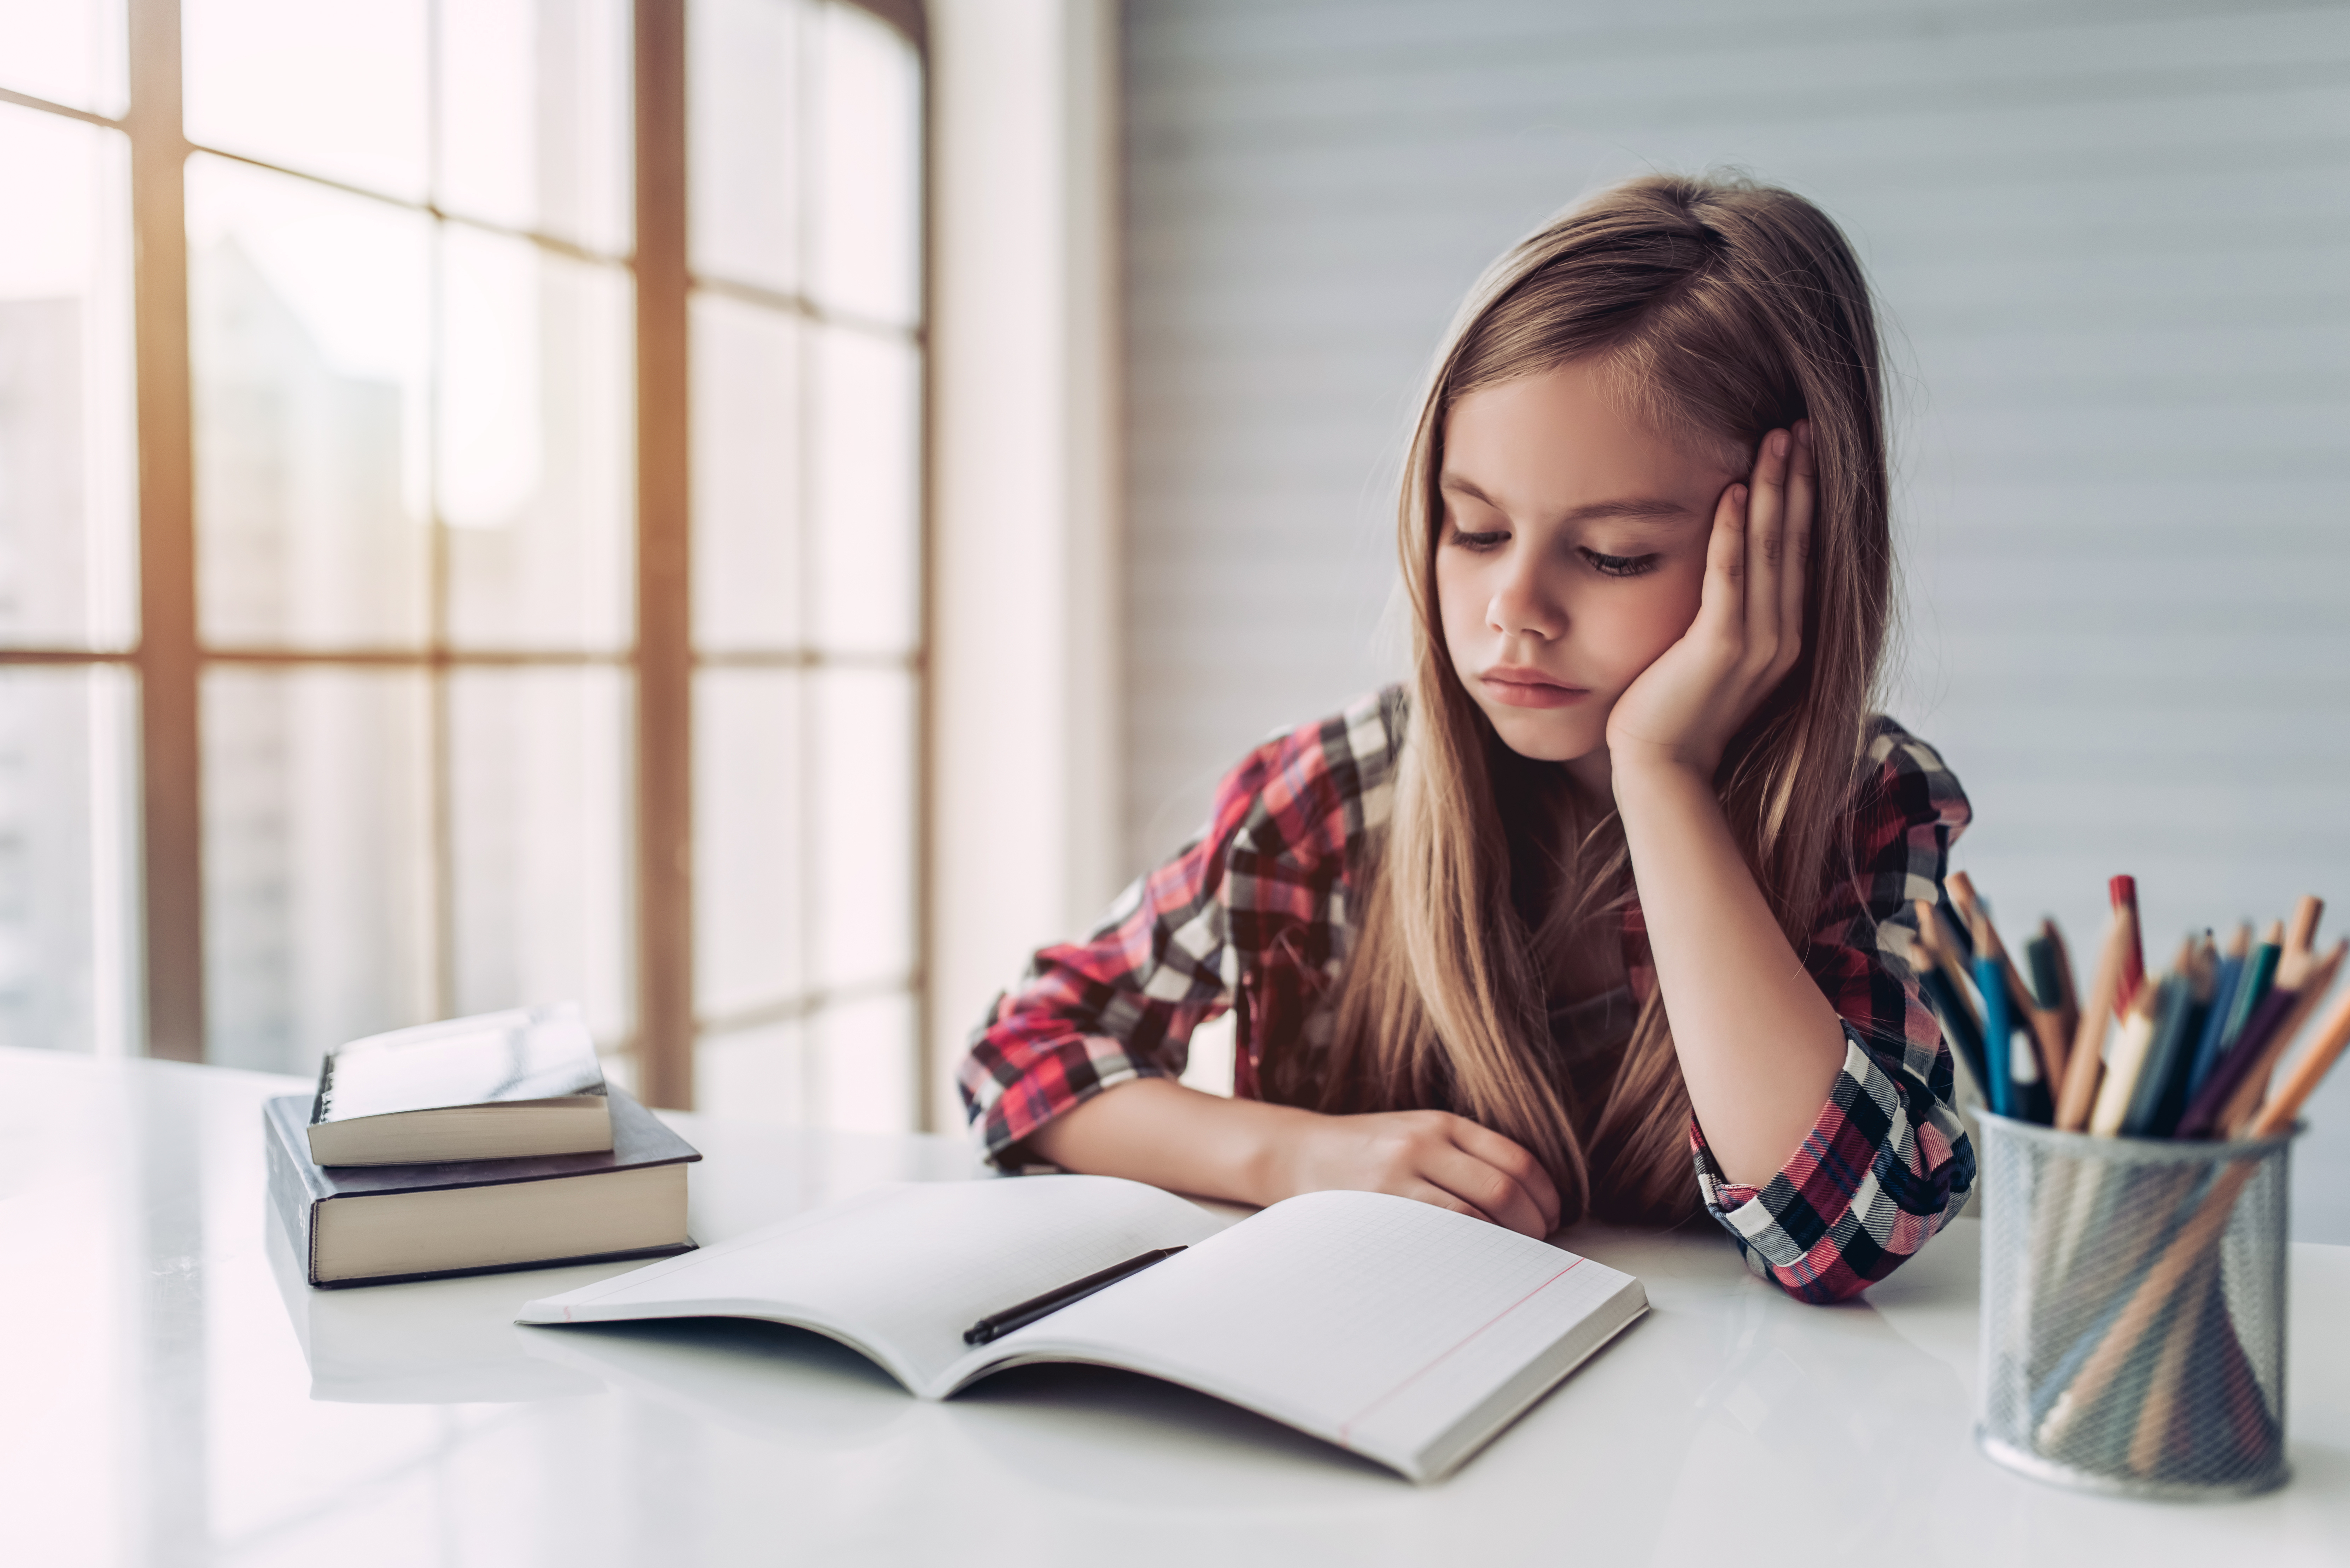 Une jeune fille triste fixant un livre sur son bureau | Source : Shutterstock